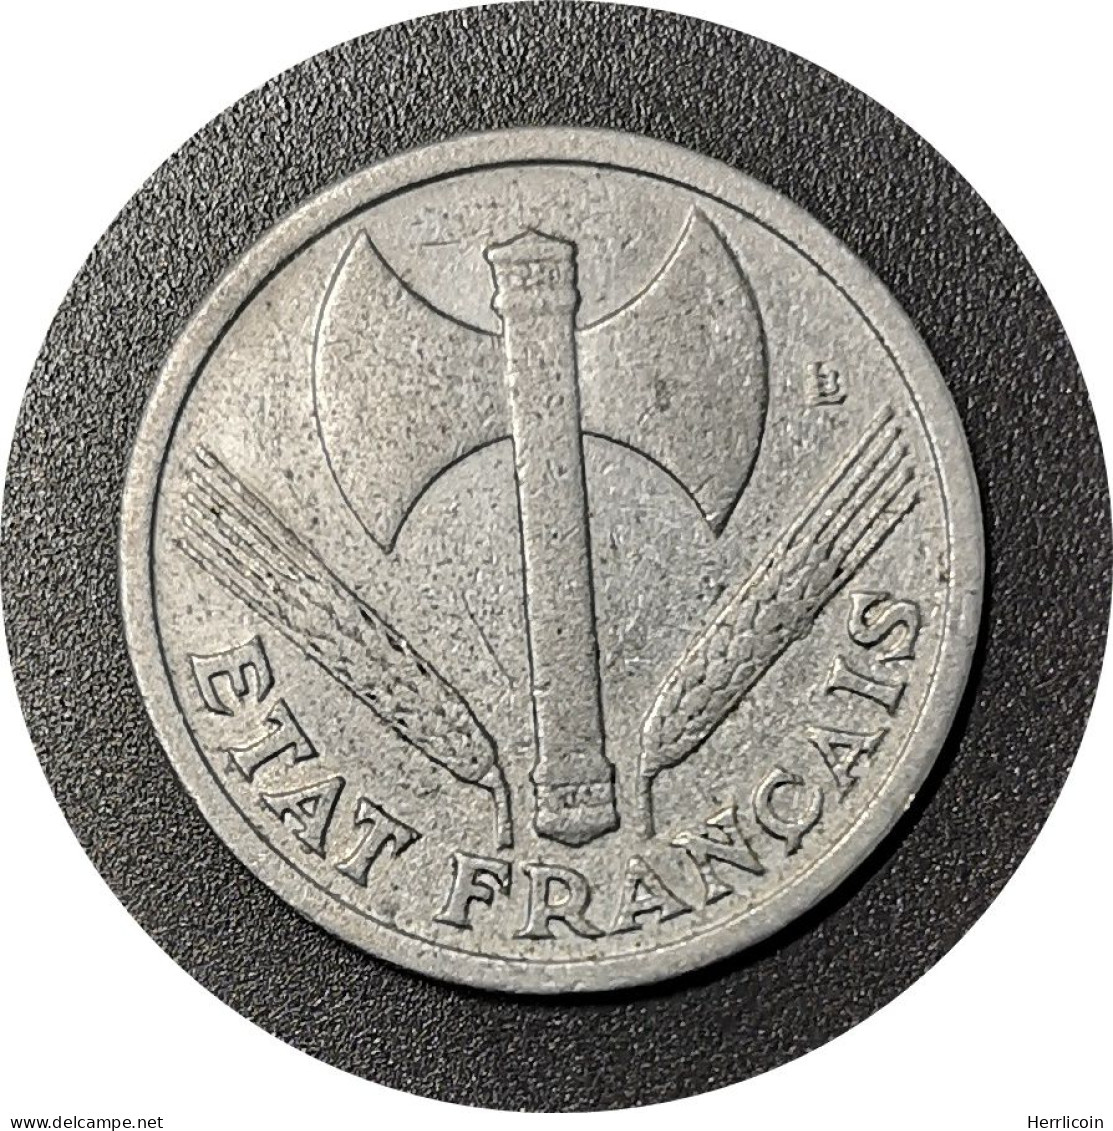 Monnaie France - 1943 - 1 Franc Francisque Aluminium-magnésium, Légère (1,3g) - 1 Franc